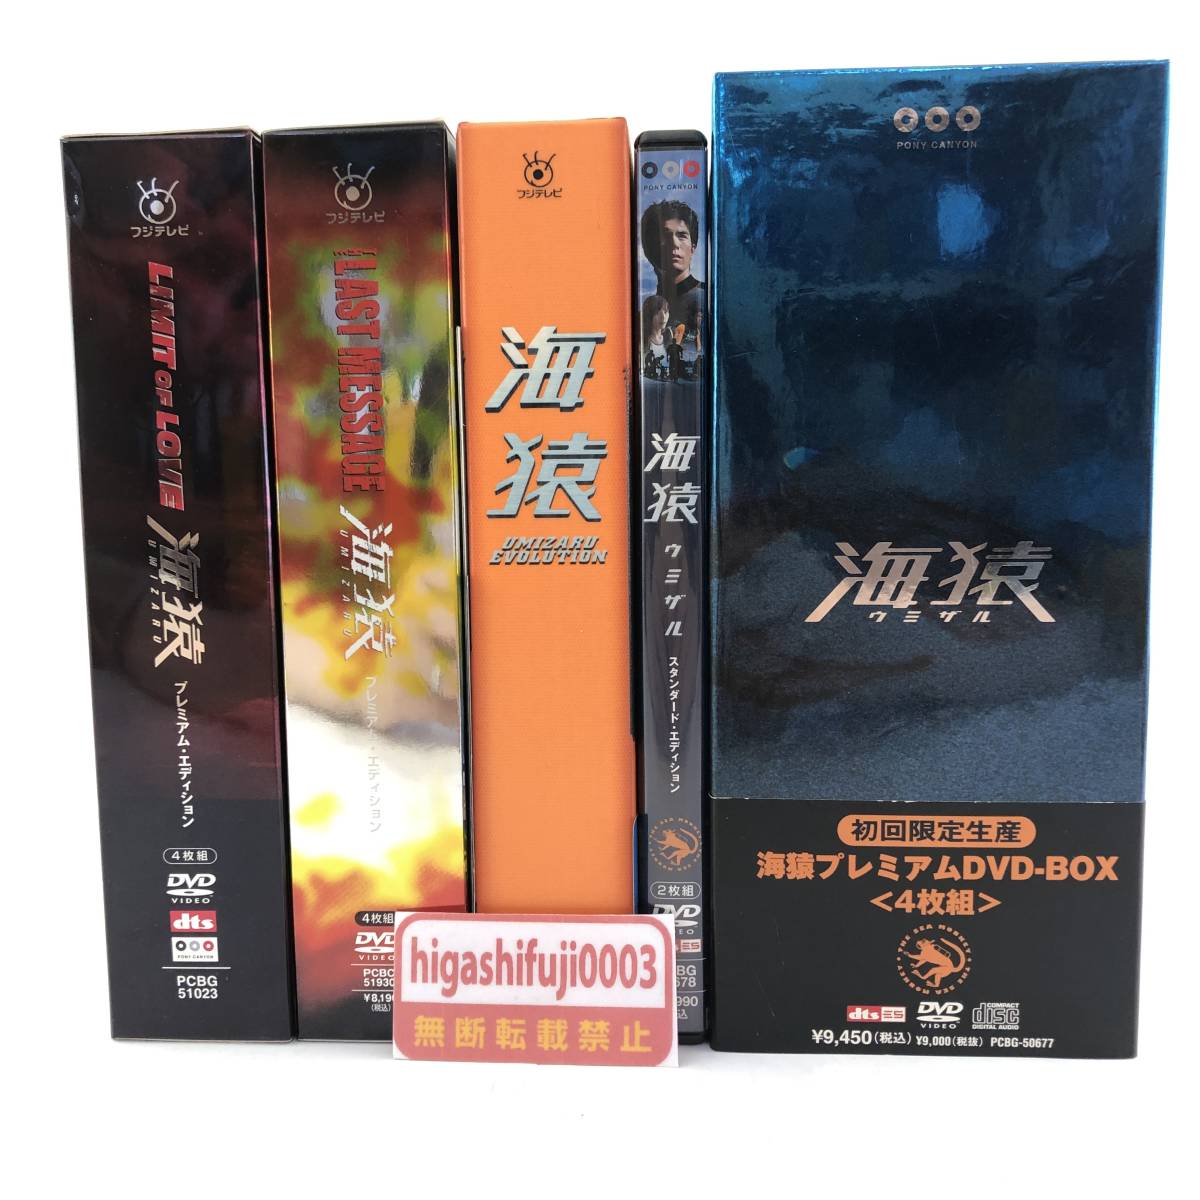 DVD-BOX】海猿まとめ 海猿プレミアムDVD-BOX(初回限定生産)/THE LAST